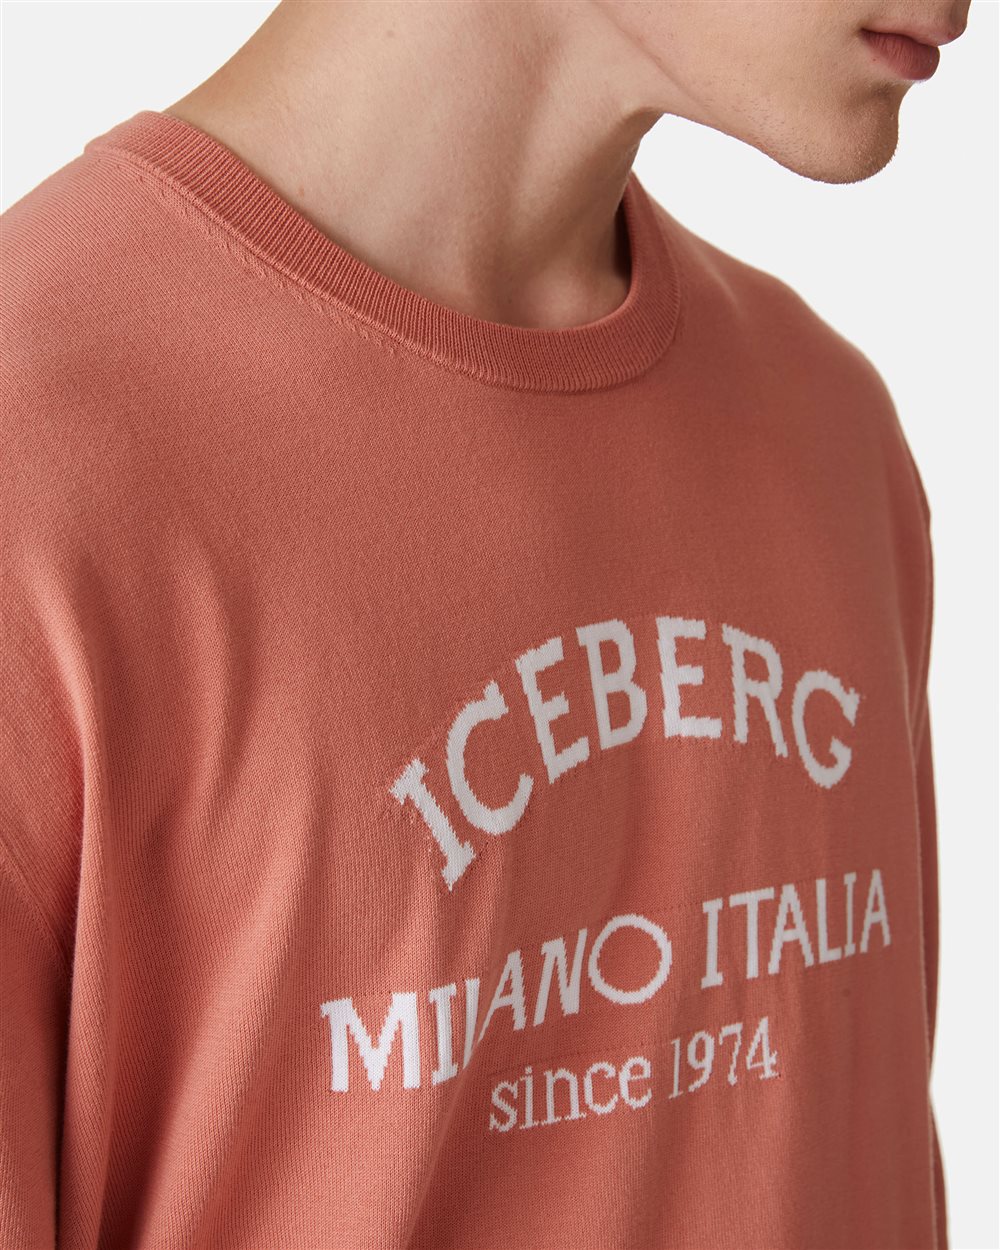 Maglia girocollo con logo - Iceberg - Official Website